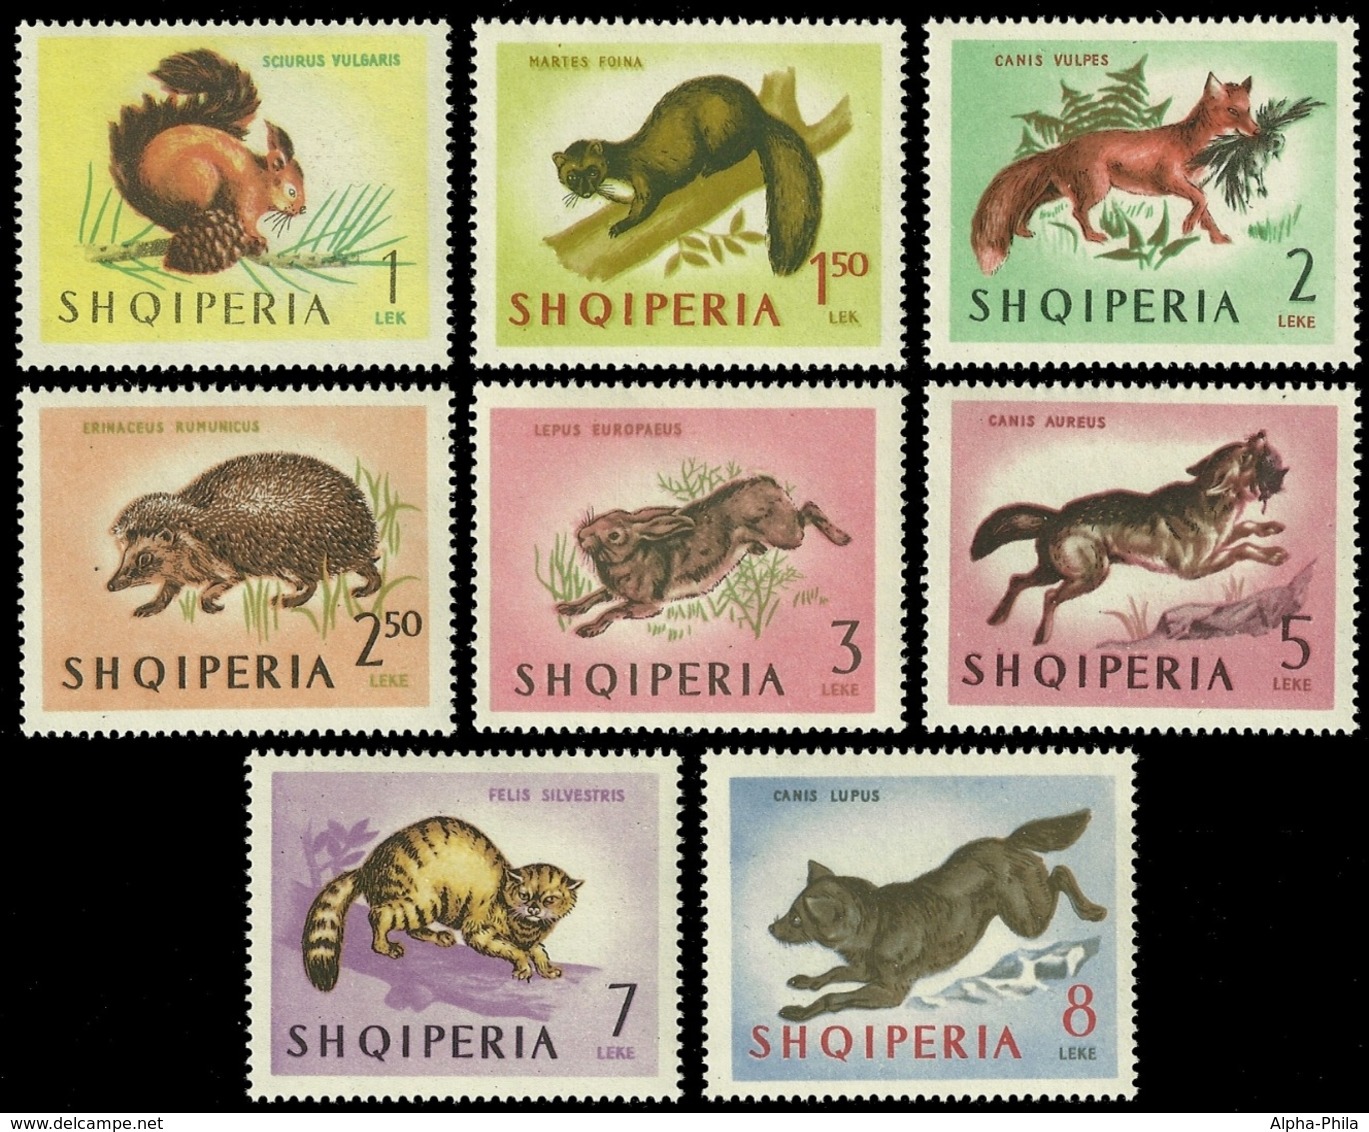 Albanien 1964 - Mi-Nr. 815-822 ** - MNH - Wildtiere / Wild Animals - Albanien